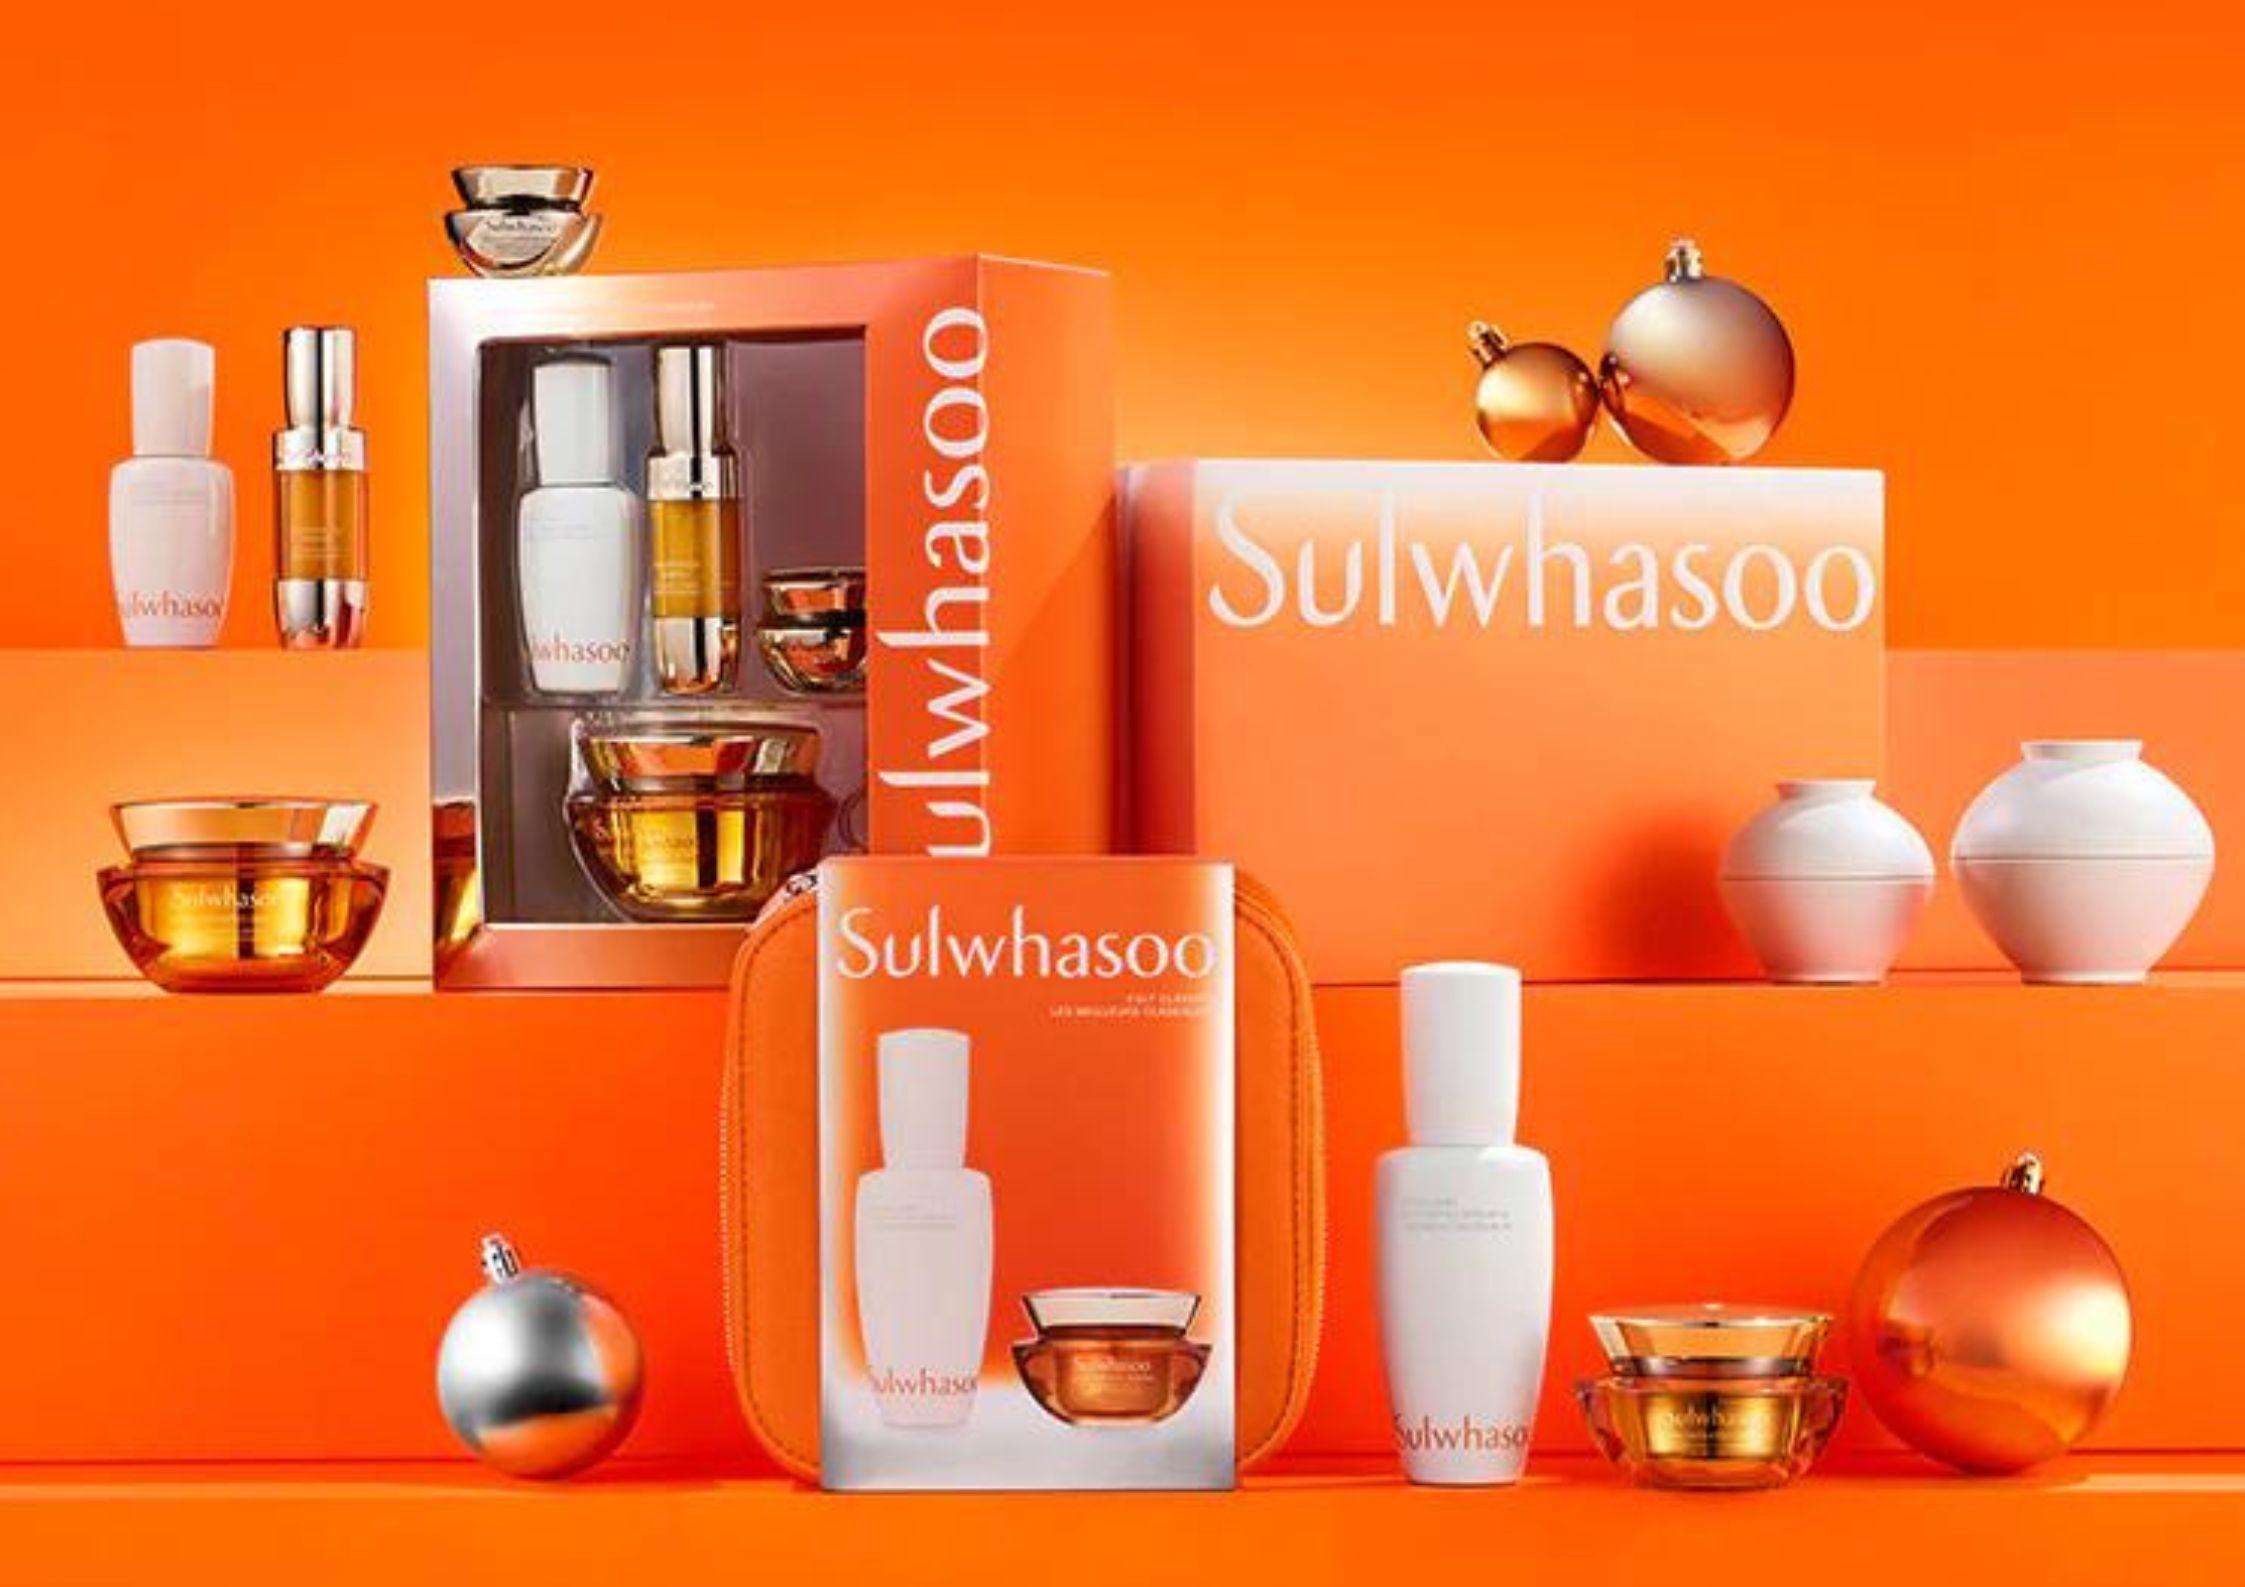 Sulwhasoo là thương hiệu nổi tiếng, có xuất xứ từ Hàn Quốc (Ảnh: Internet).